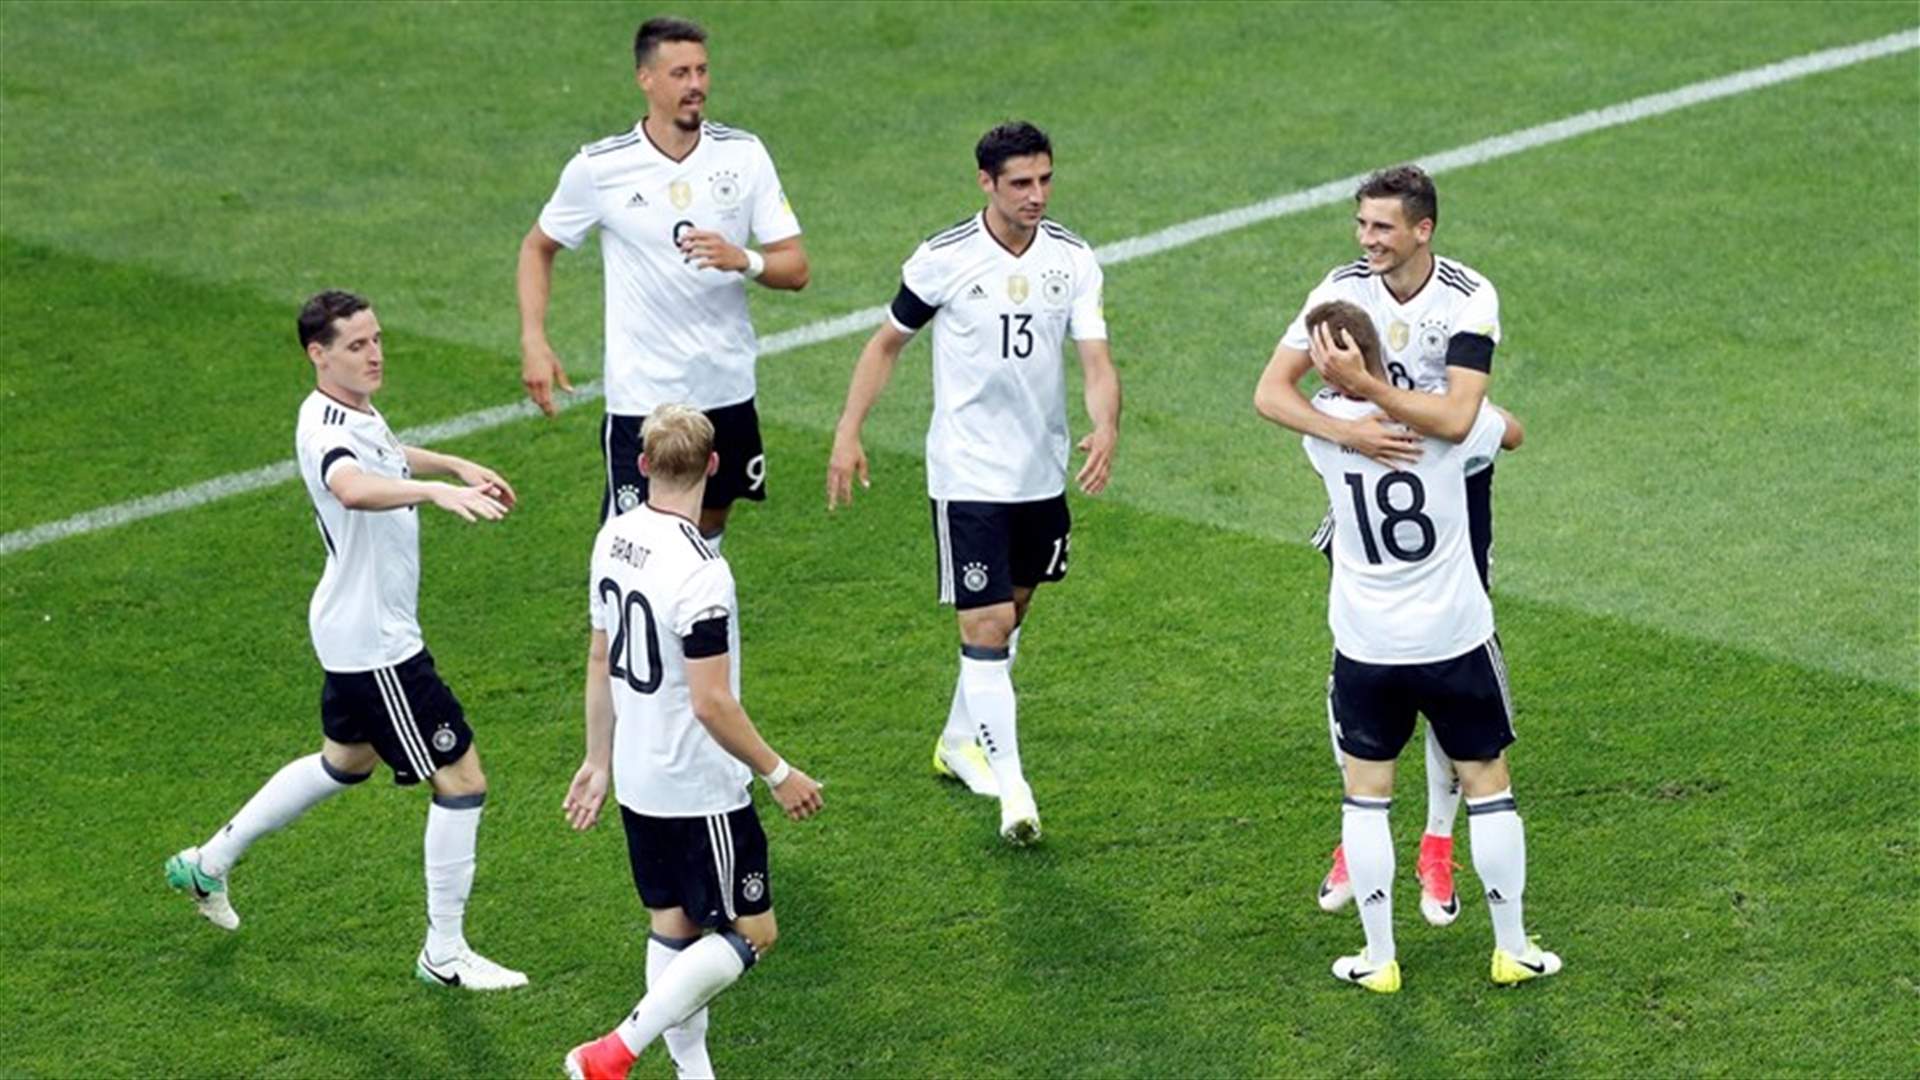 المانيا بتشكيلة شابة تهزم استراليا 3-2 في كأس القارات